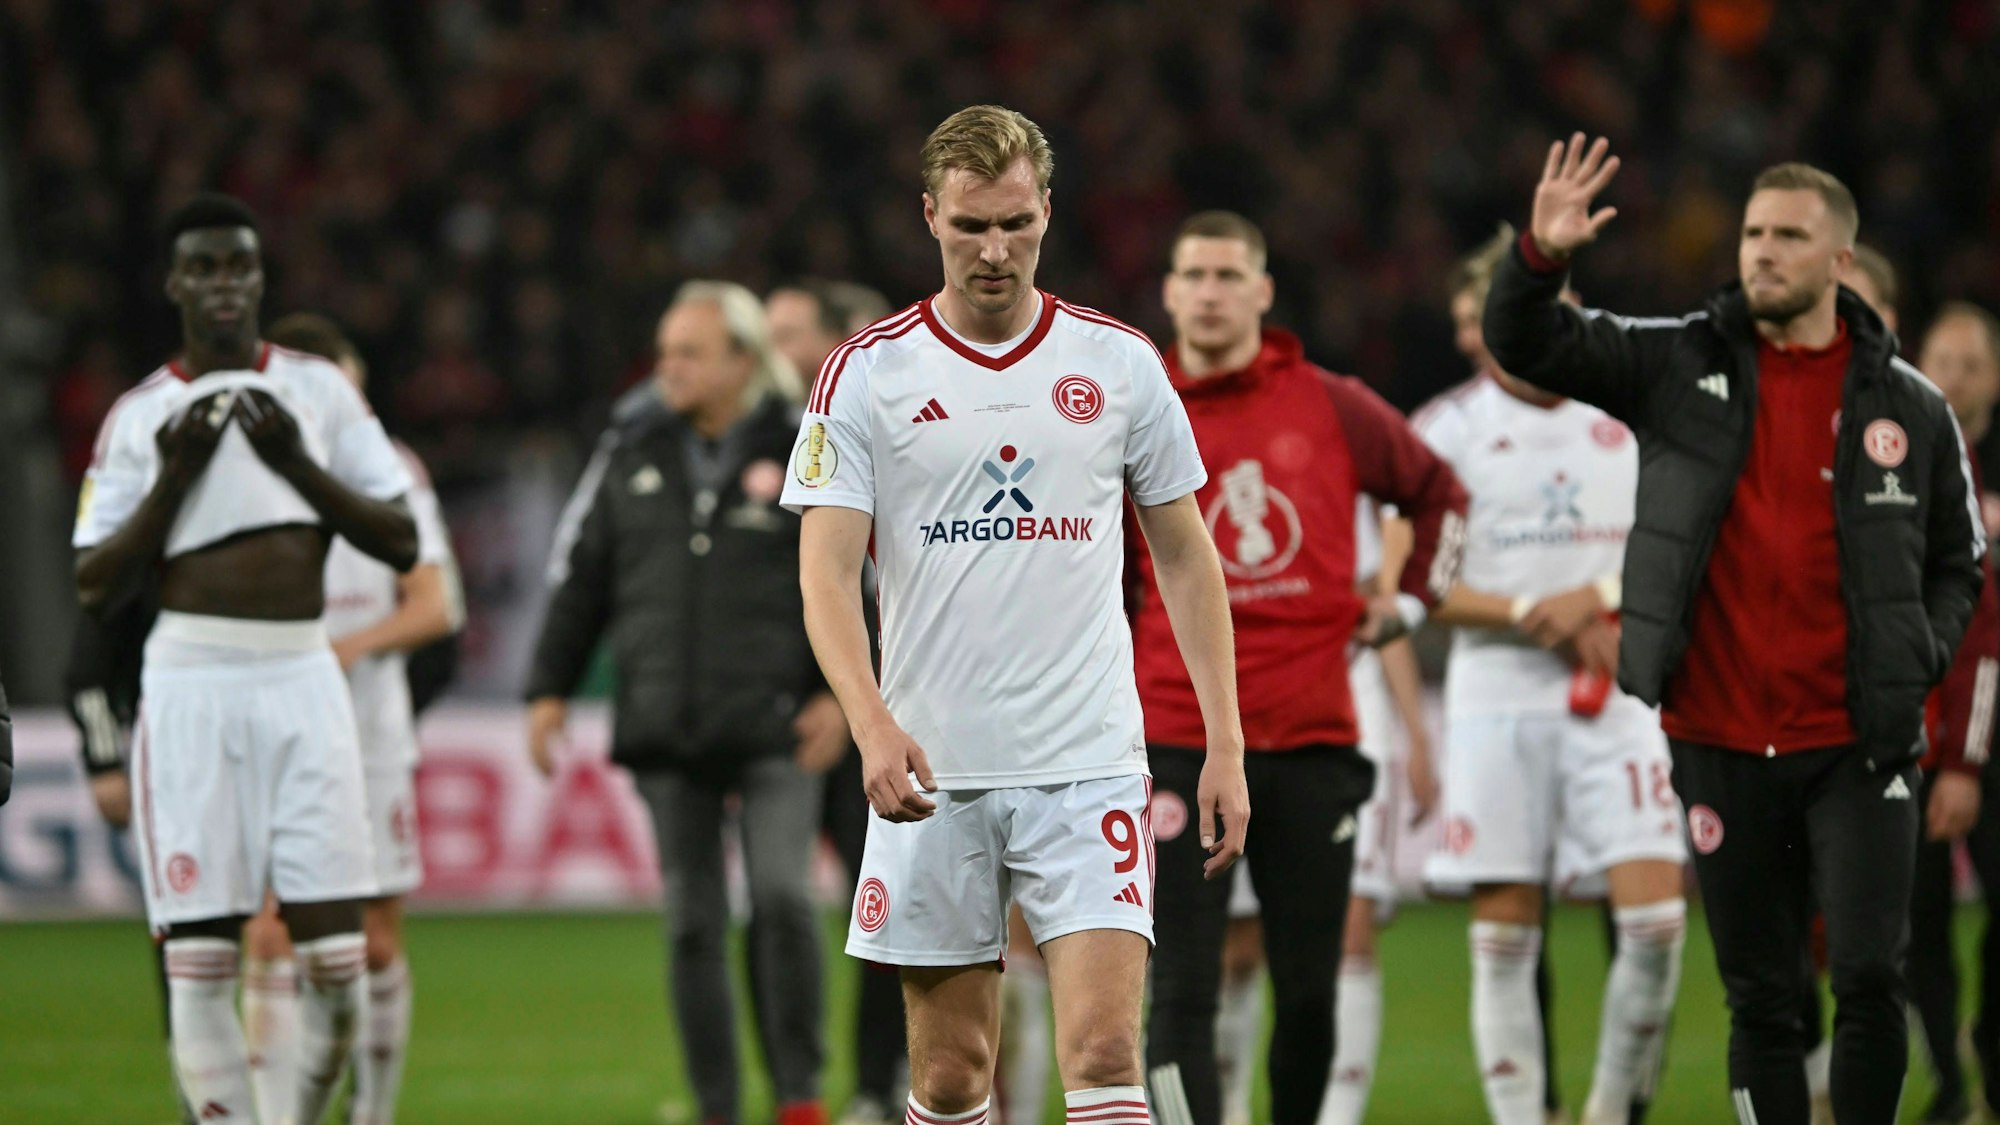 Die Spieler von Fortuna Düsseldorf laufen nach dem Pokal-Spiel in Leverkusen enttäuscht über den Platz.